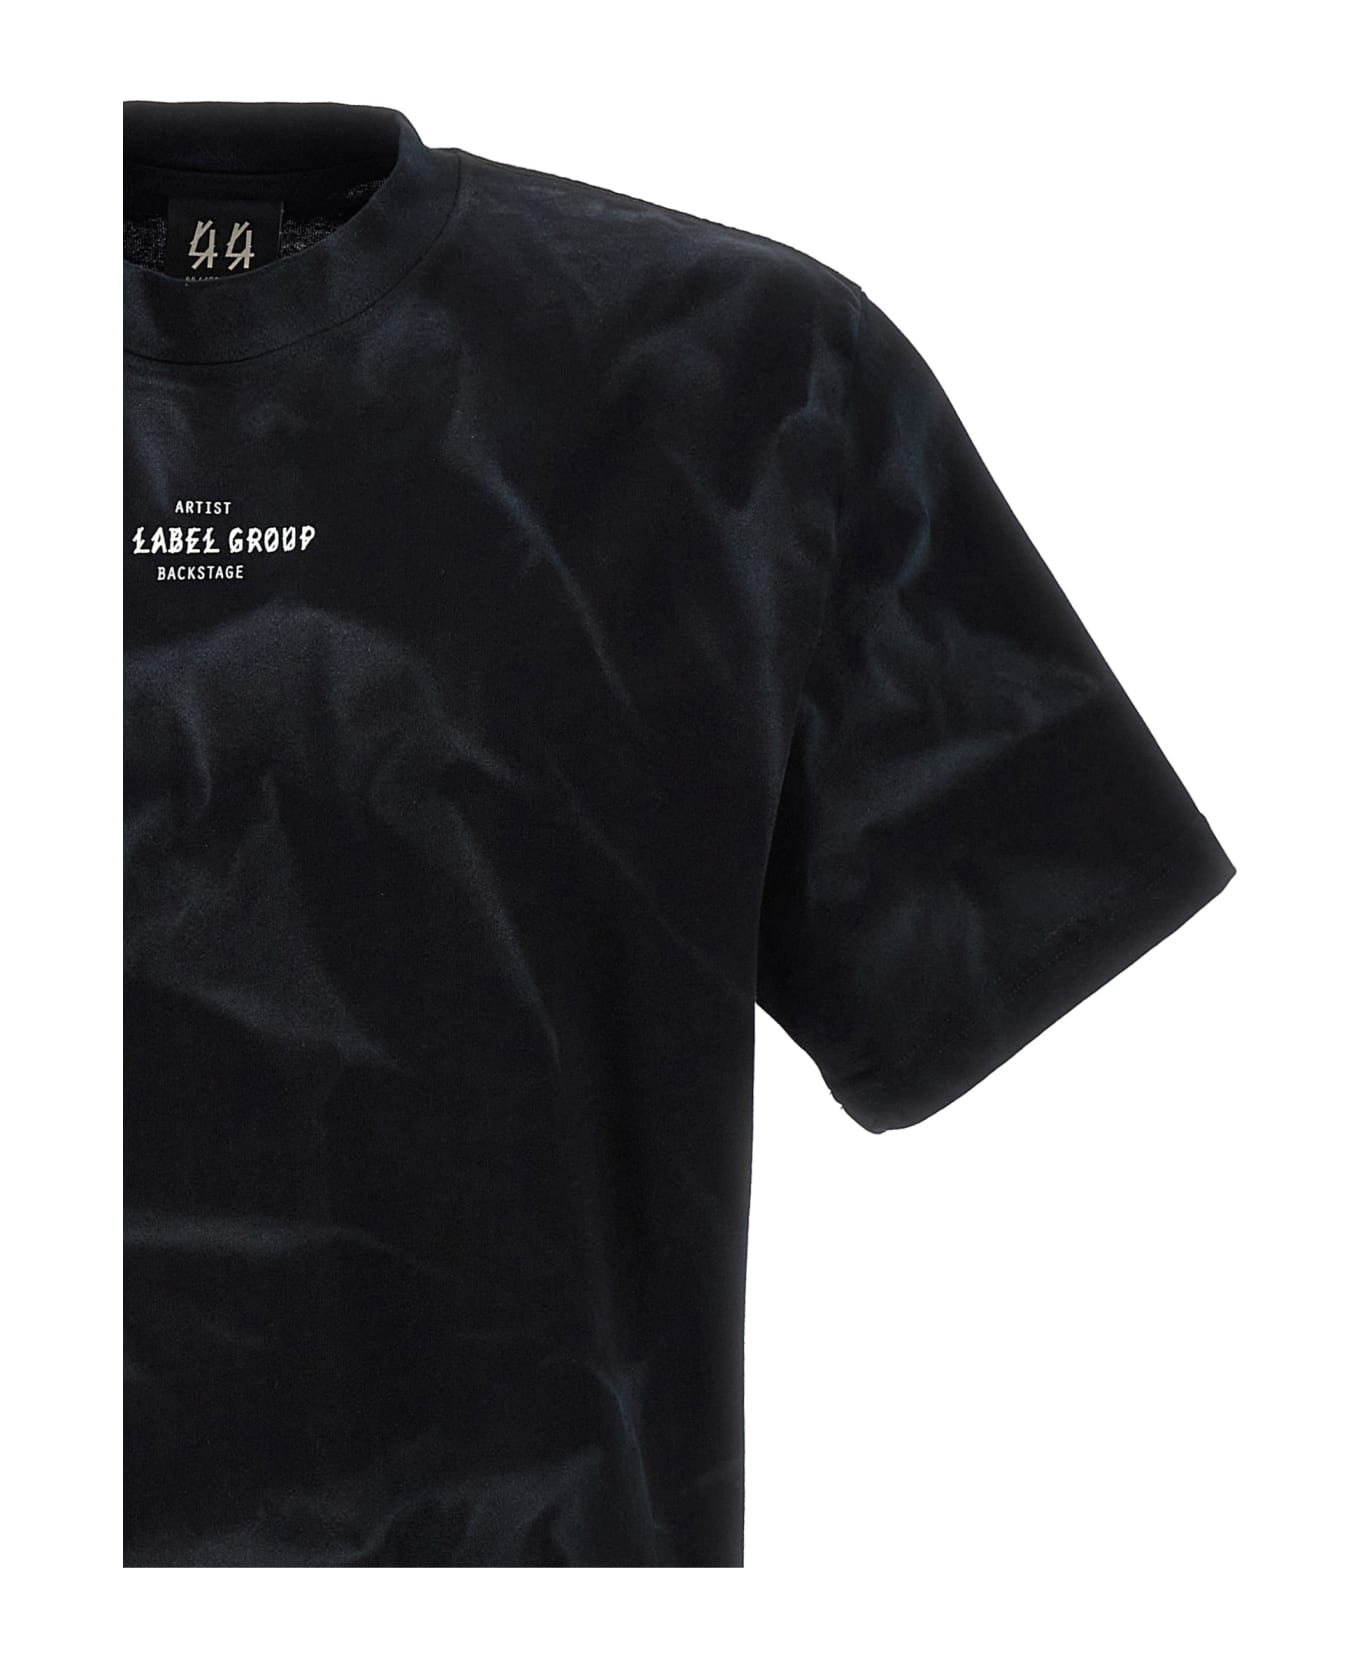 44 Label Group '44 Smoke' T-shirt - White/Black シャツ